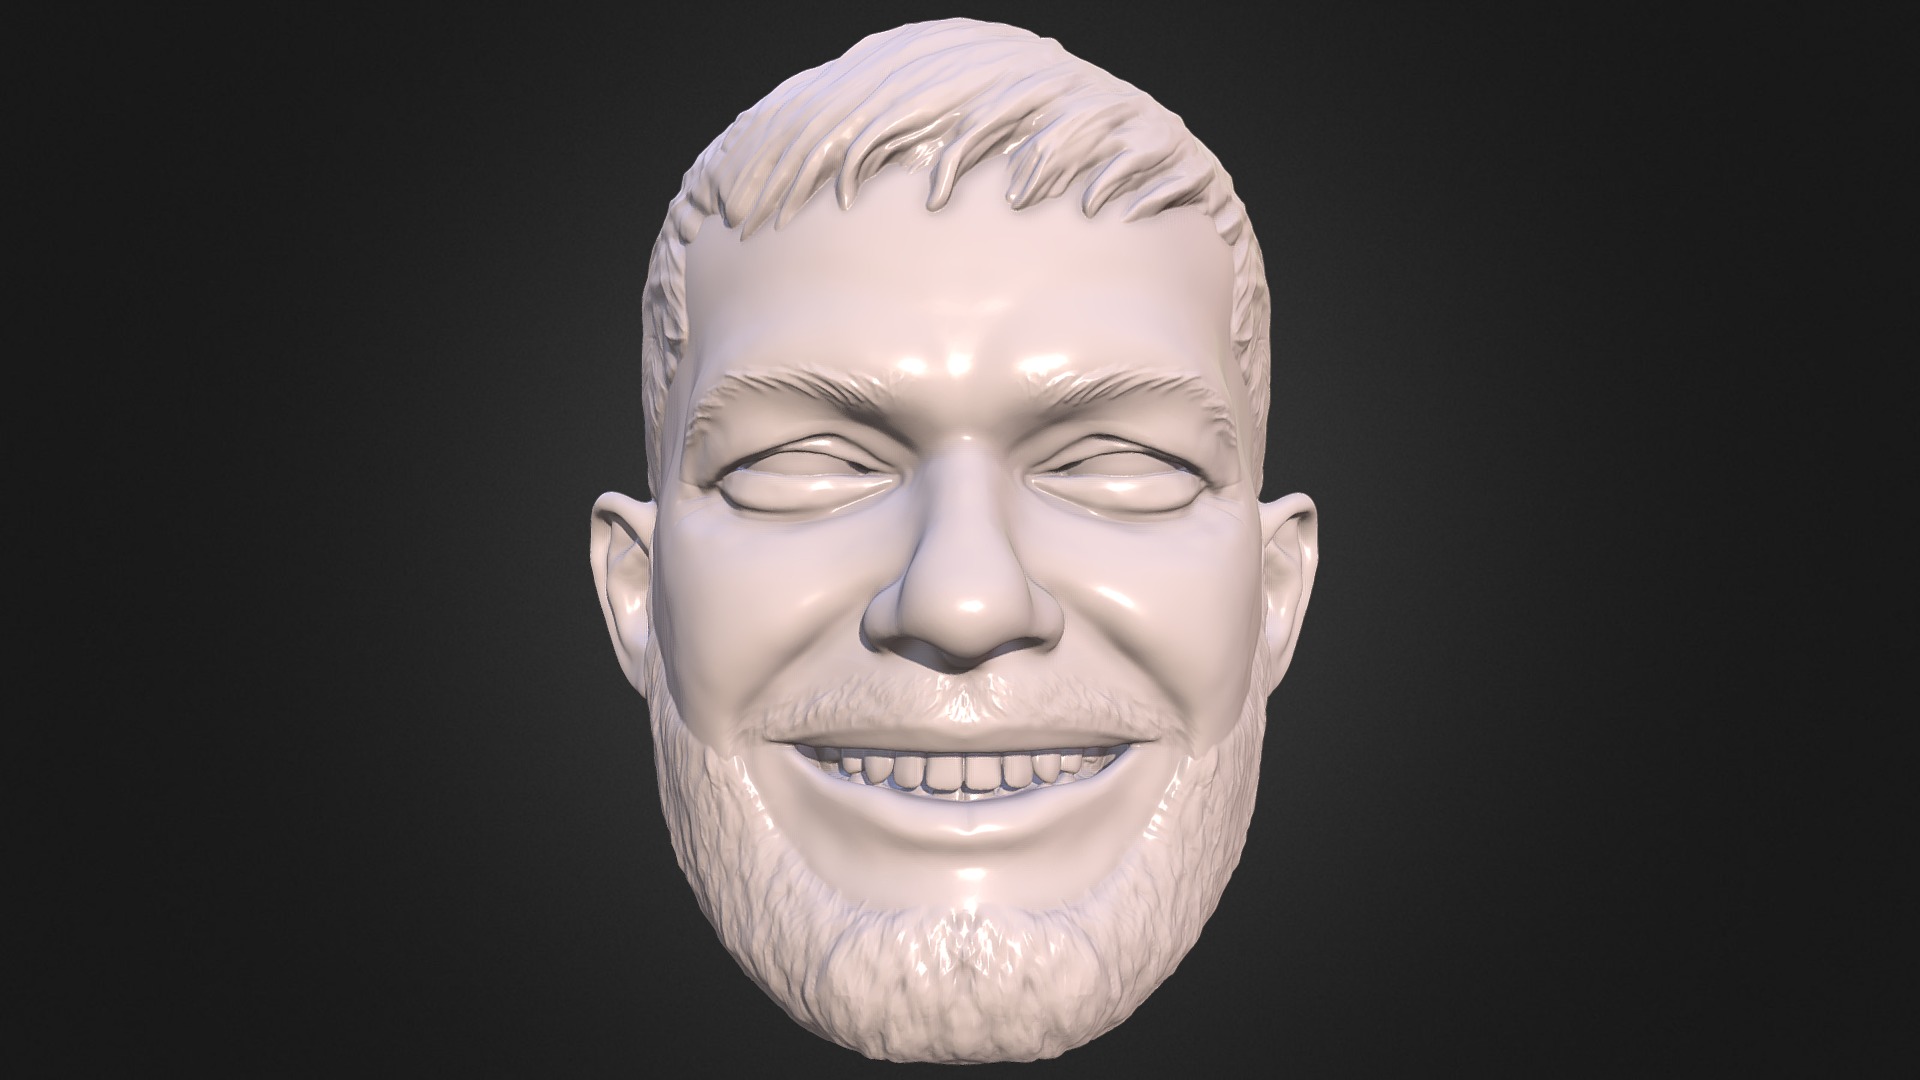 3D model Finn Balor 3D printable portrait sculpt - This is a 3D model of the Finn Balor 3D printable portrait sculpt. The 3D model is about a statue of a person.